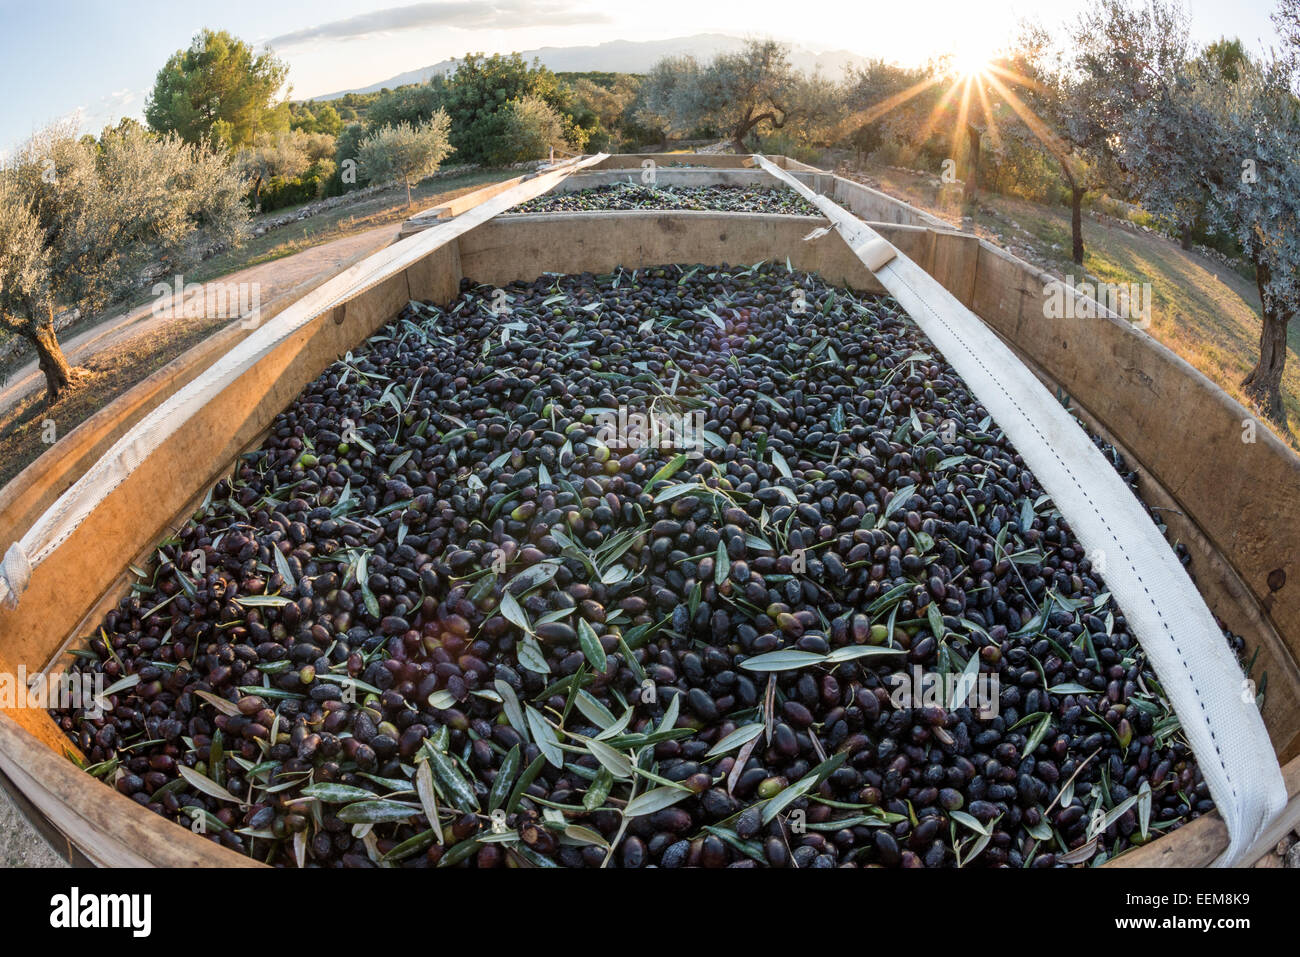 Plein fraîchement cueillies de salze olives (aka salcena) à l'arrière d'un tracteur, Tarragone, Catalogne, Espagne Banque D'Images